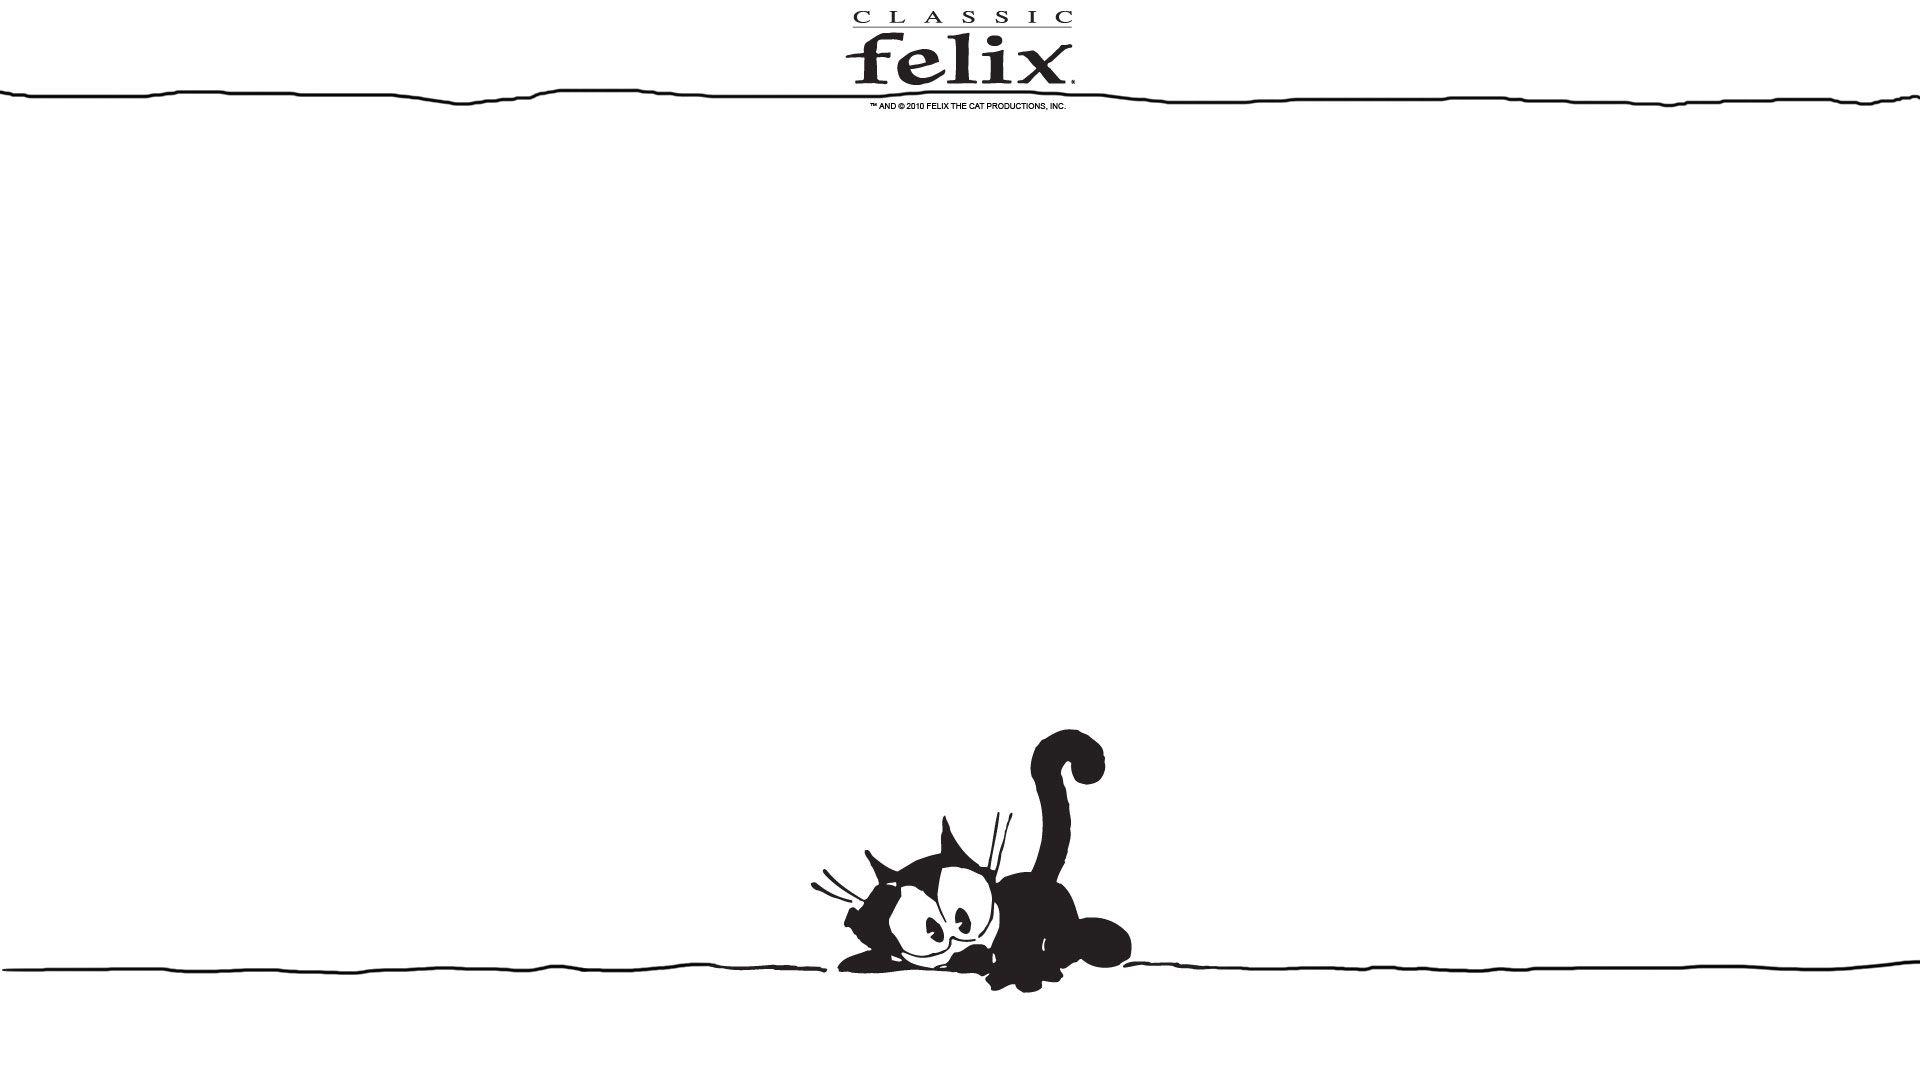 felix the cat wallpaper hd